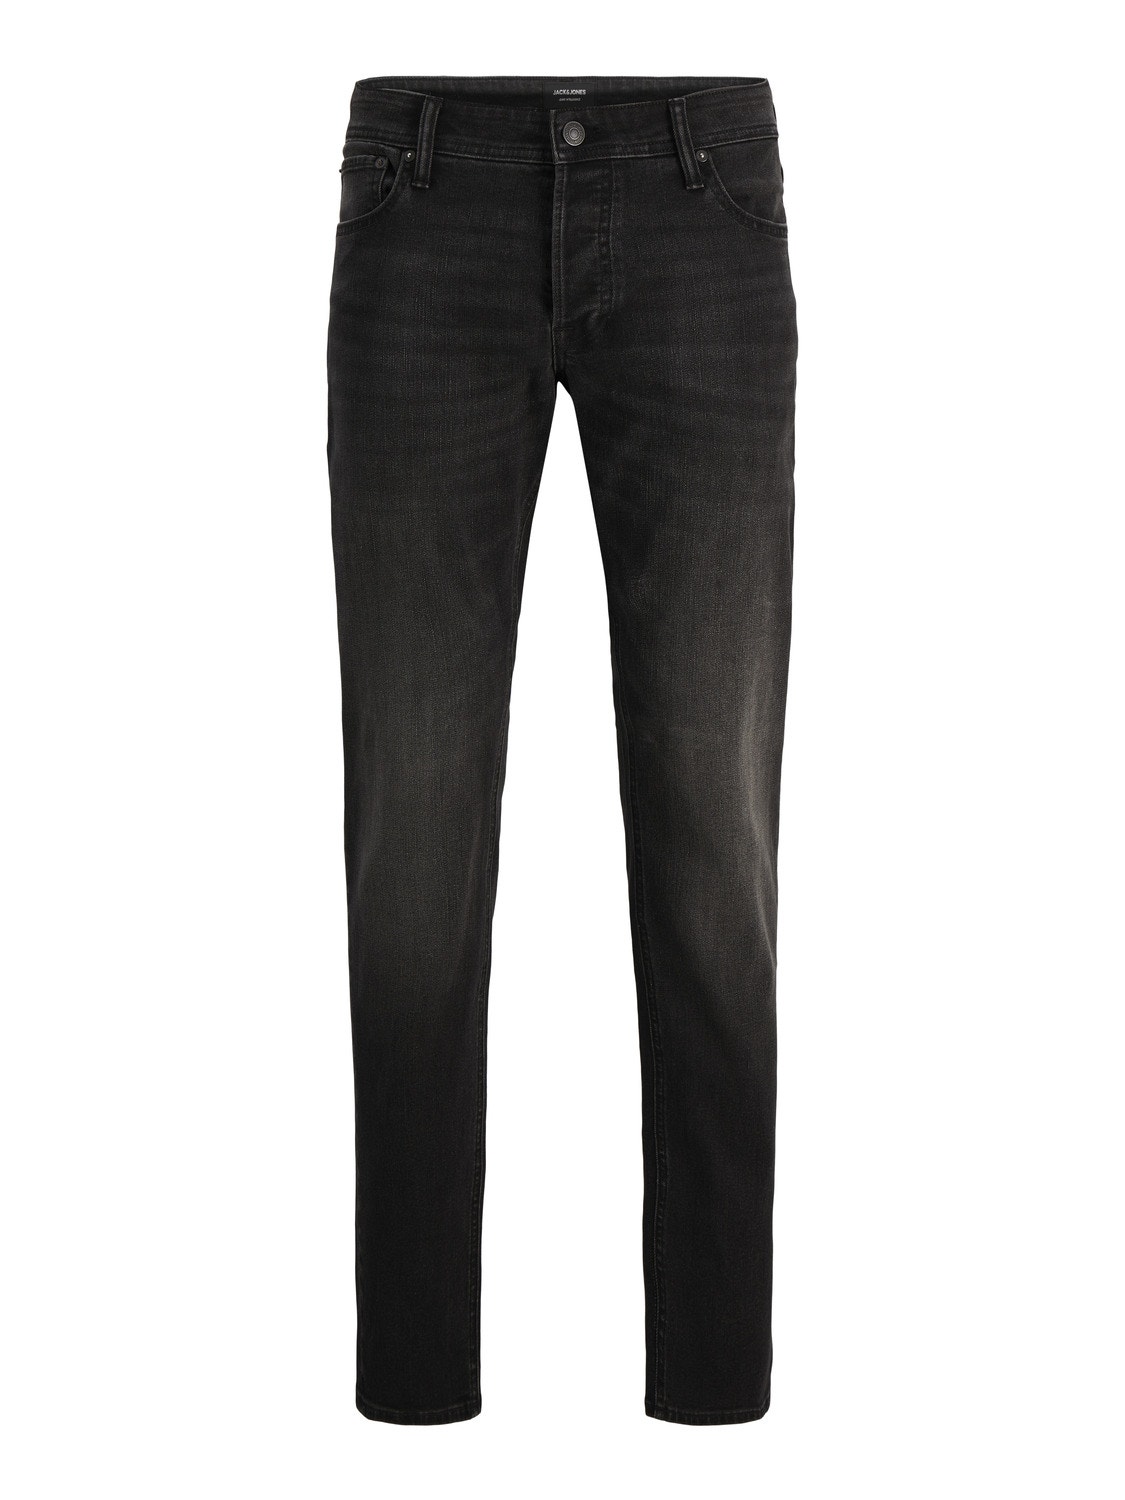 Jack & Jones JJILIAM JJORIGINAL SQ 354 Jeans skinny fit -Black Denim - 12248526